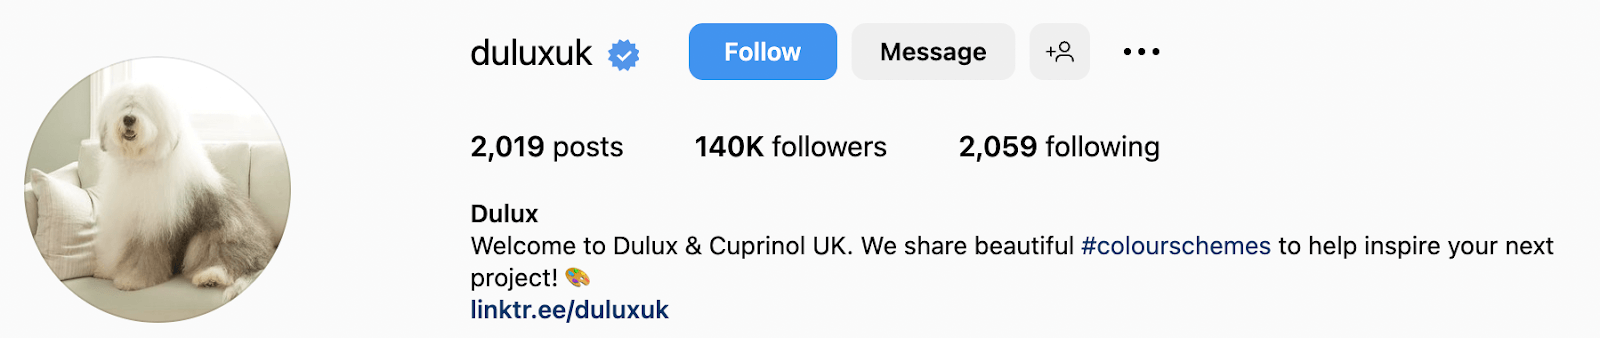 Screenshot of Duluxuk's Instagram